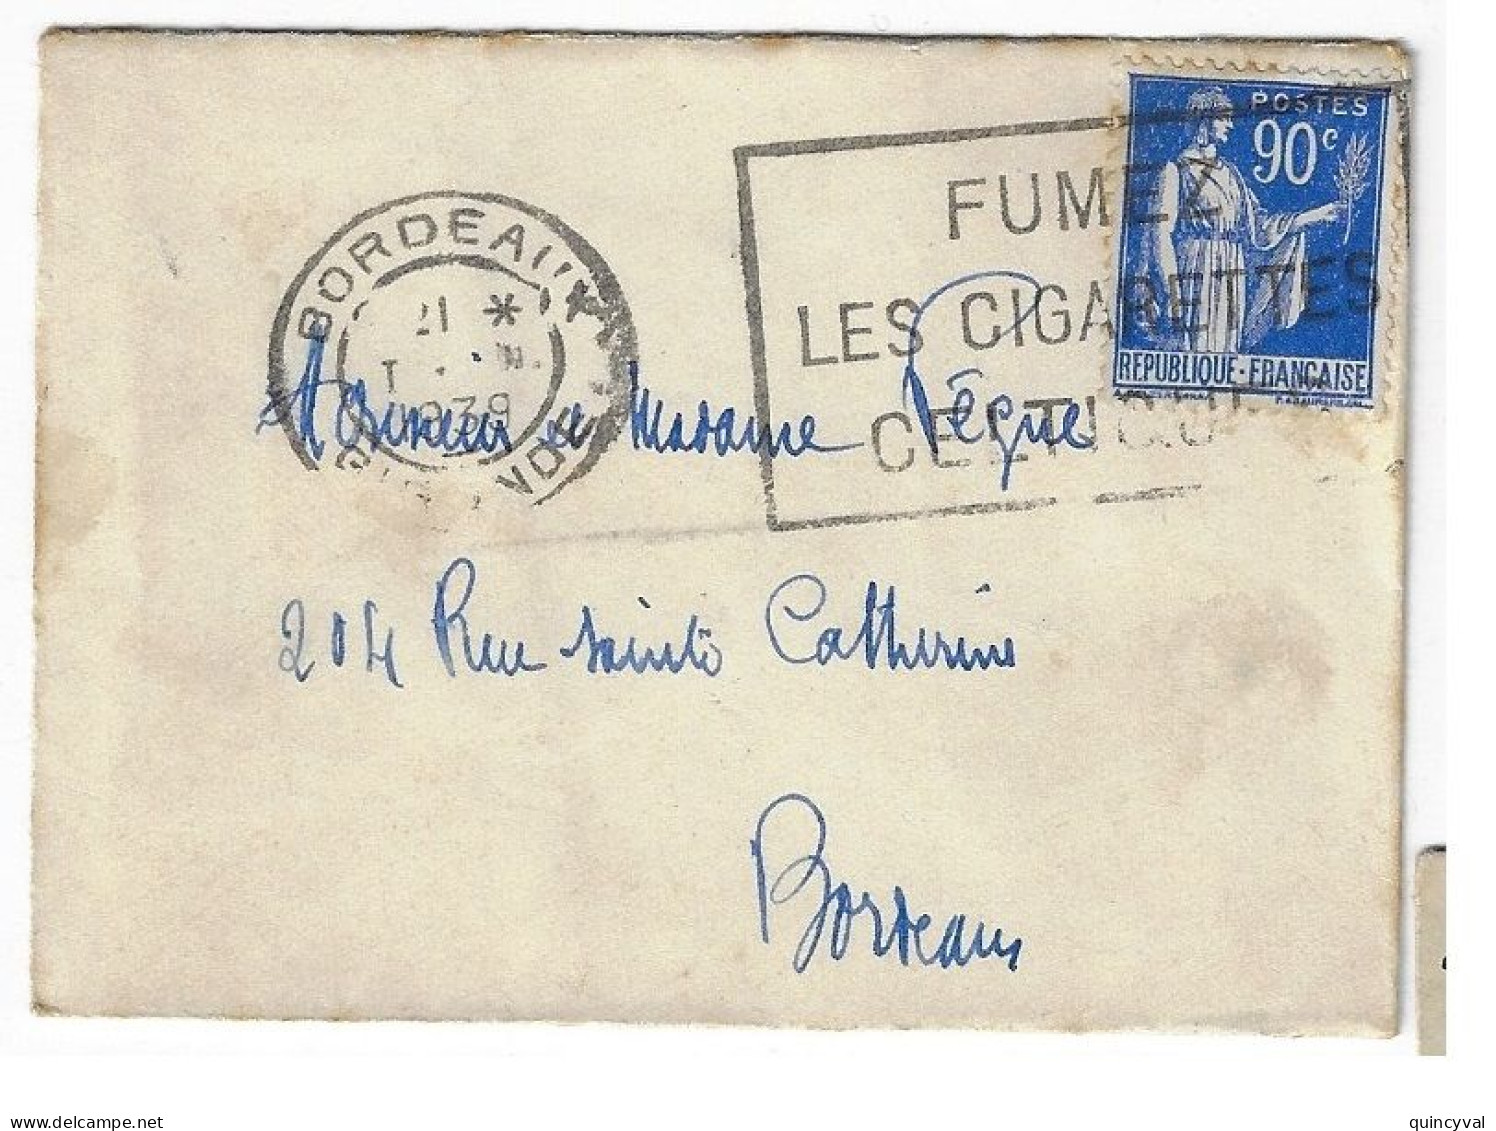 BORDEAUX Enveloppe Carte De Visite Mignonnette 90c Paix Yv 368 Ob Meca 1939 Fumez Cigarettes Celtiques - Briefe U. Dokumente